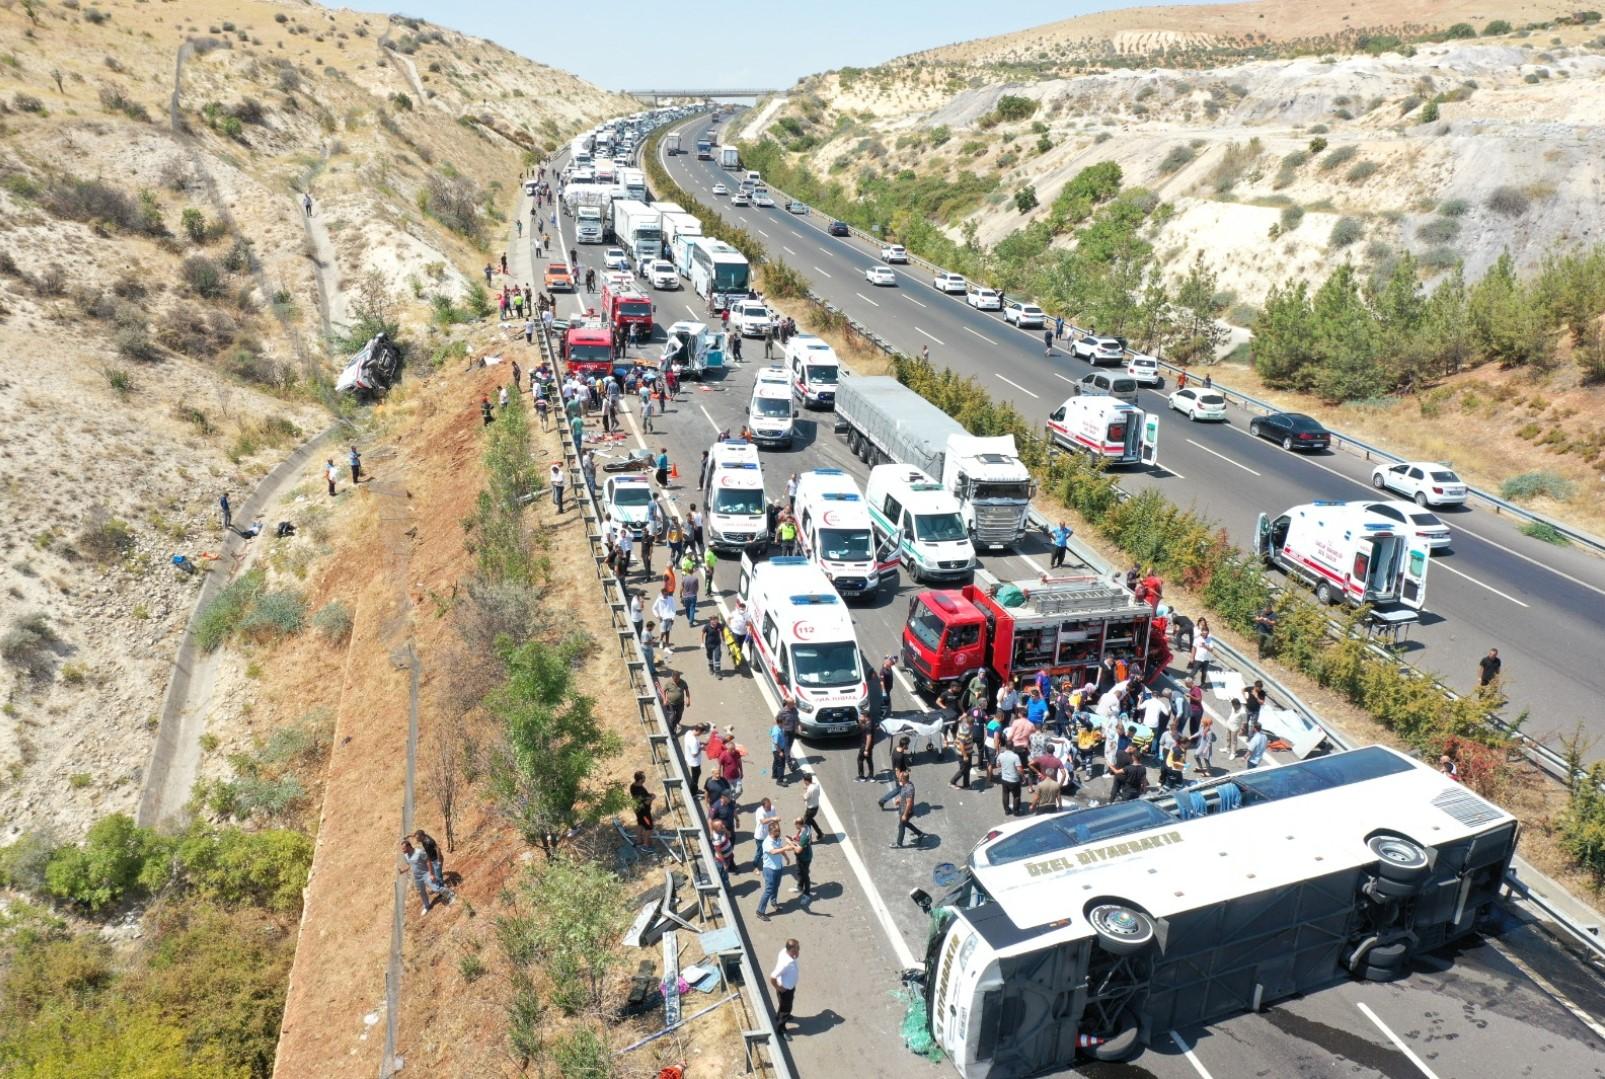 Ispovijesti povrijeđenih u nesreći u Turskoj: Pomagali smo unesrećenima, pa nas je udario autobus